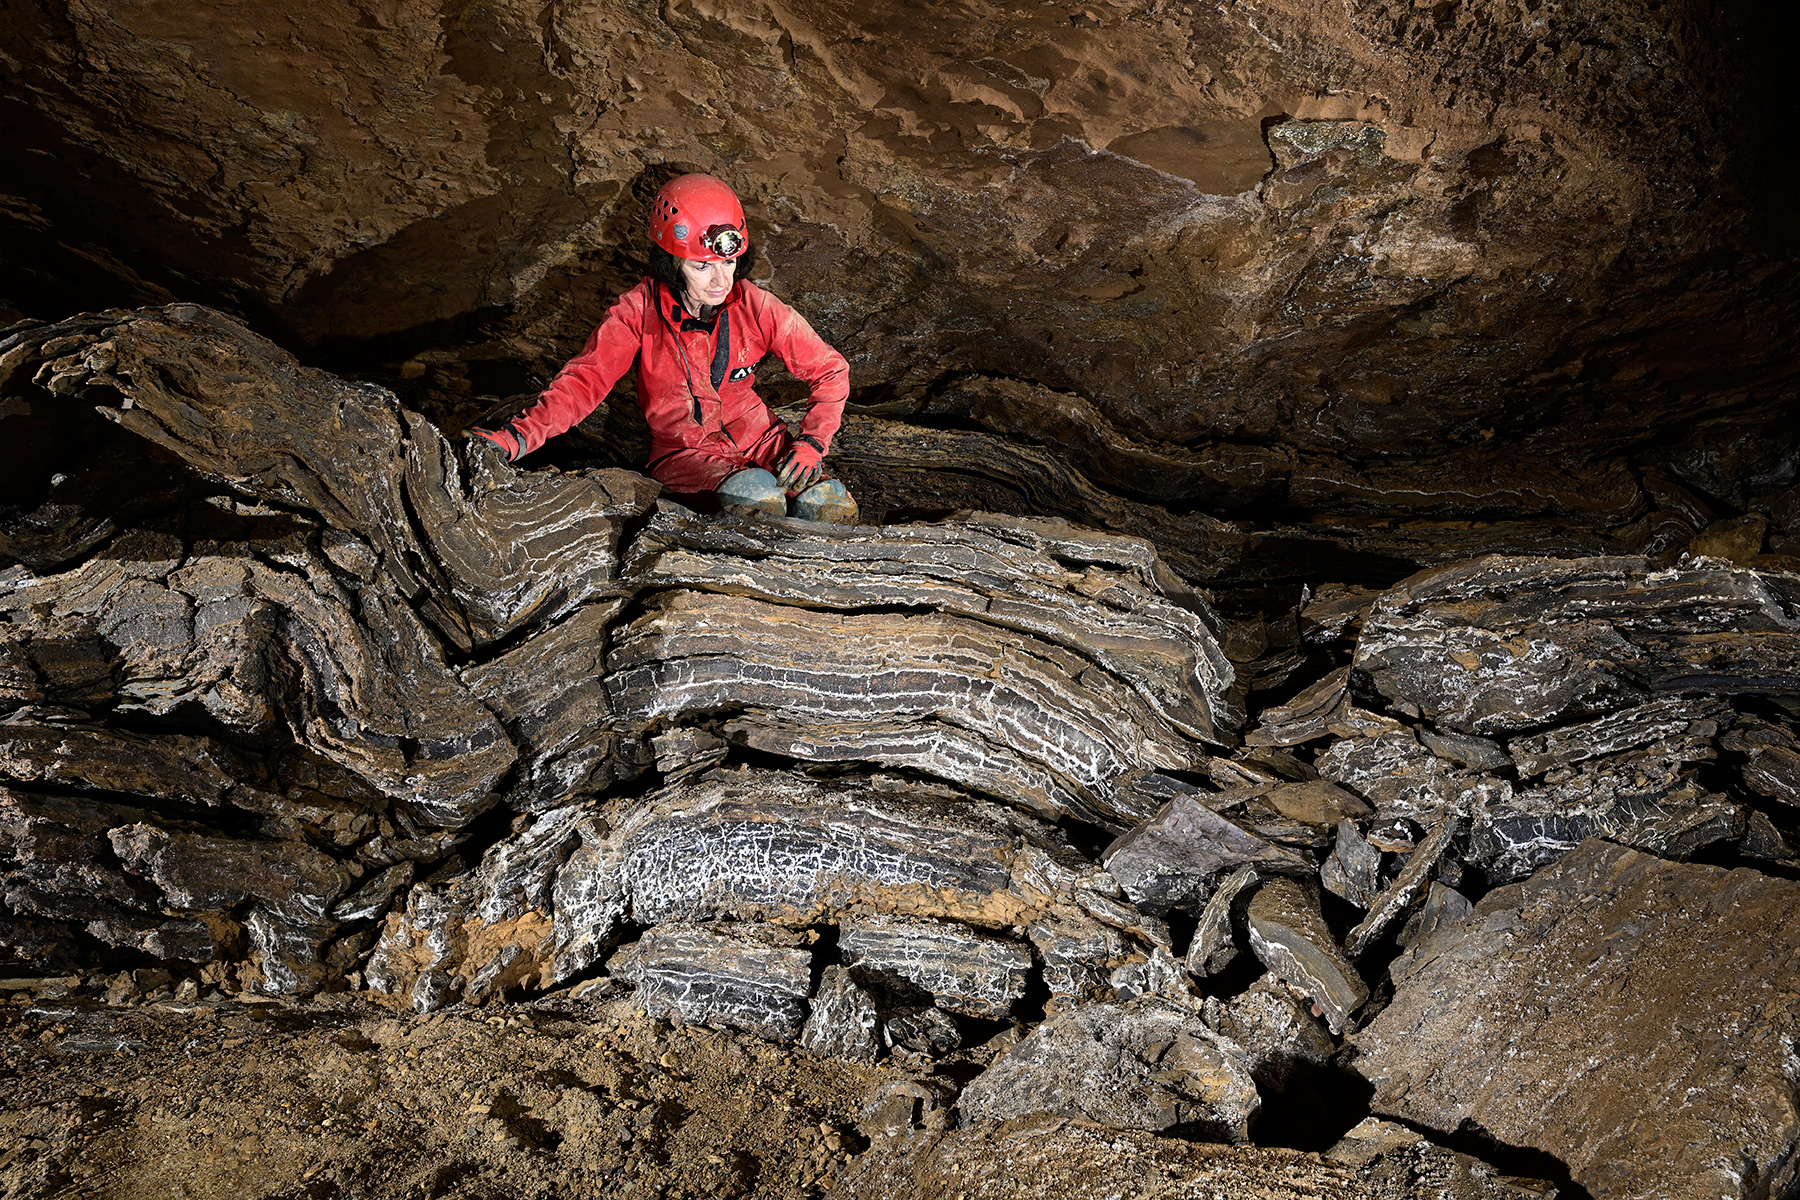 Butler cave (Virginie, USA) - Spéléo au dessus de blocs avec petites strates cristallisées (gypse)